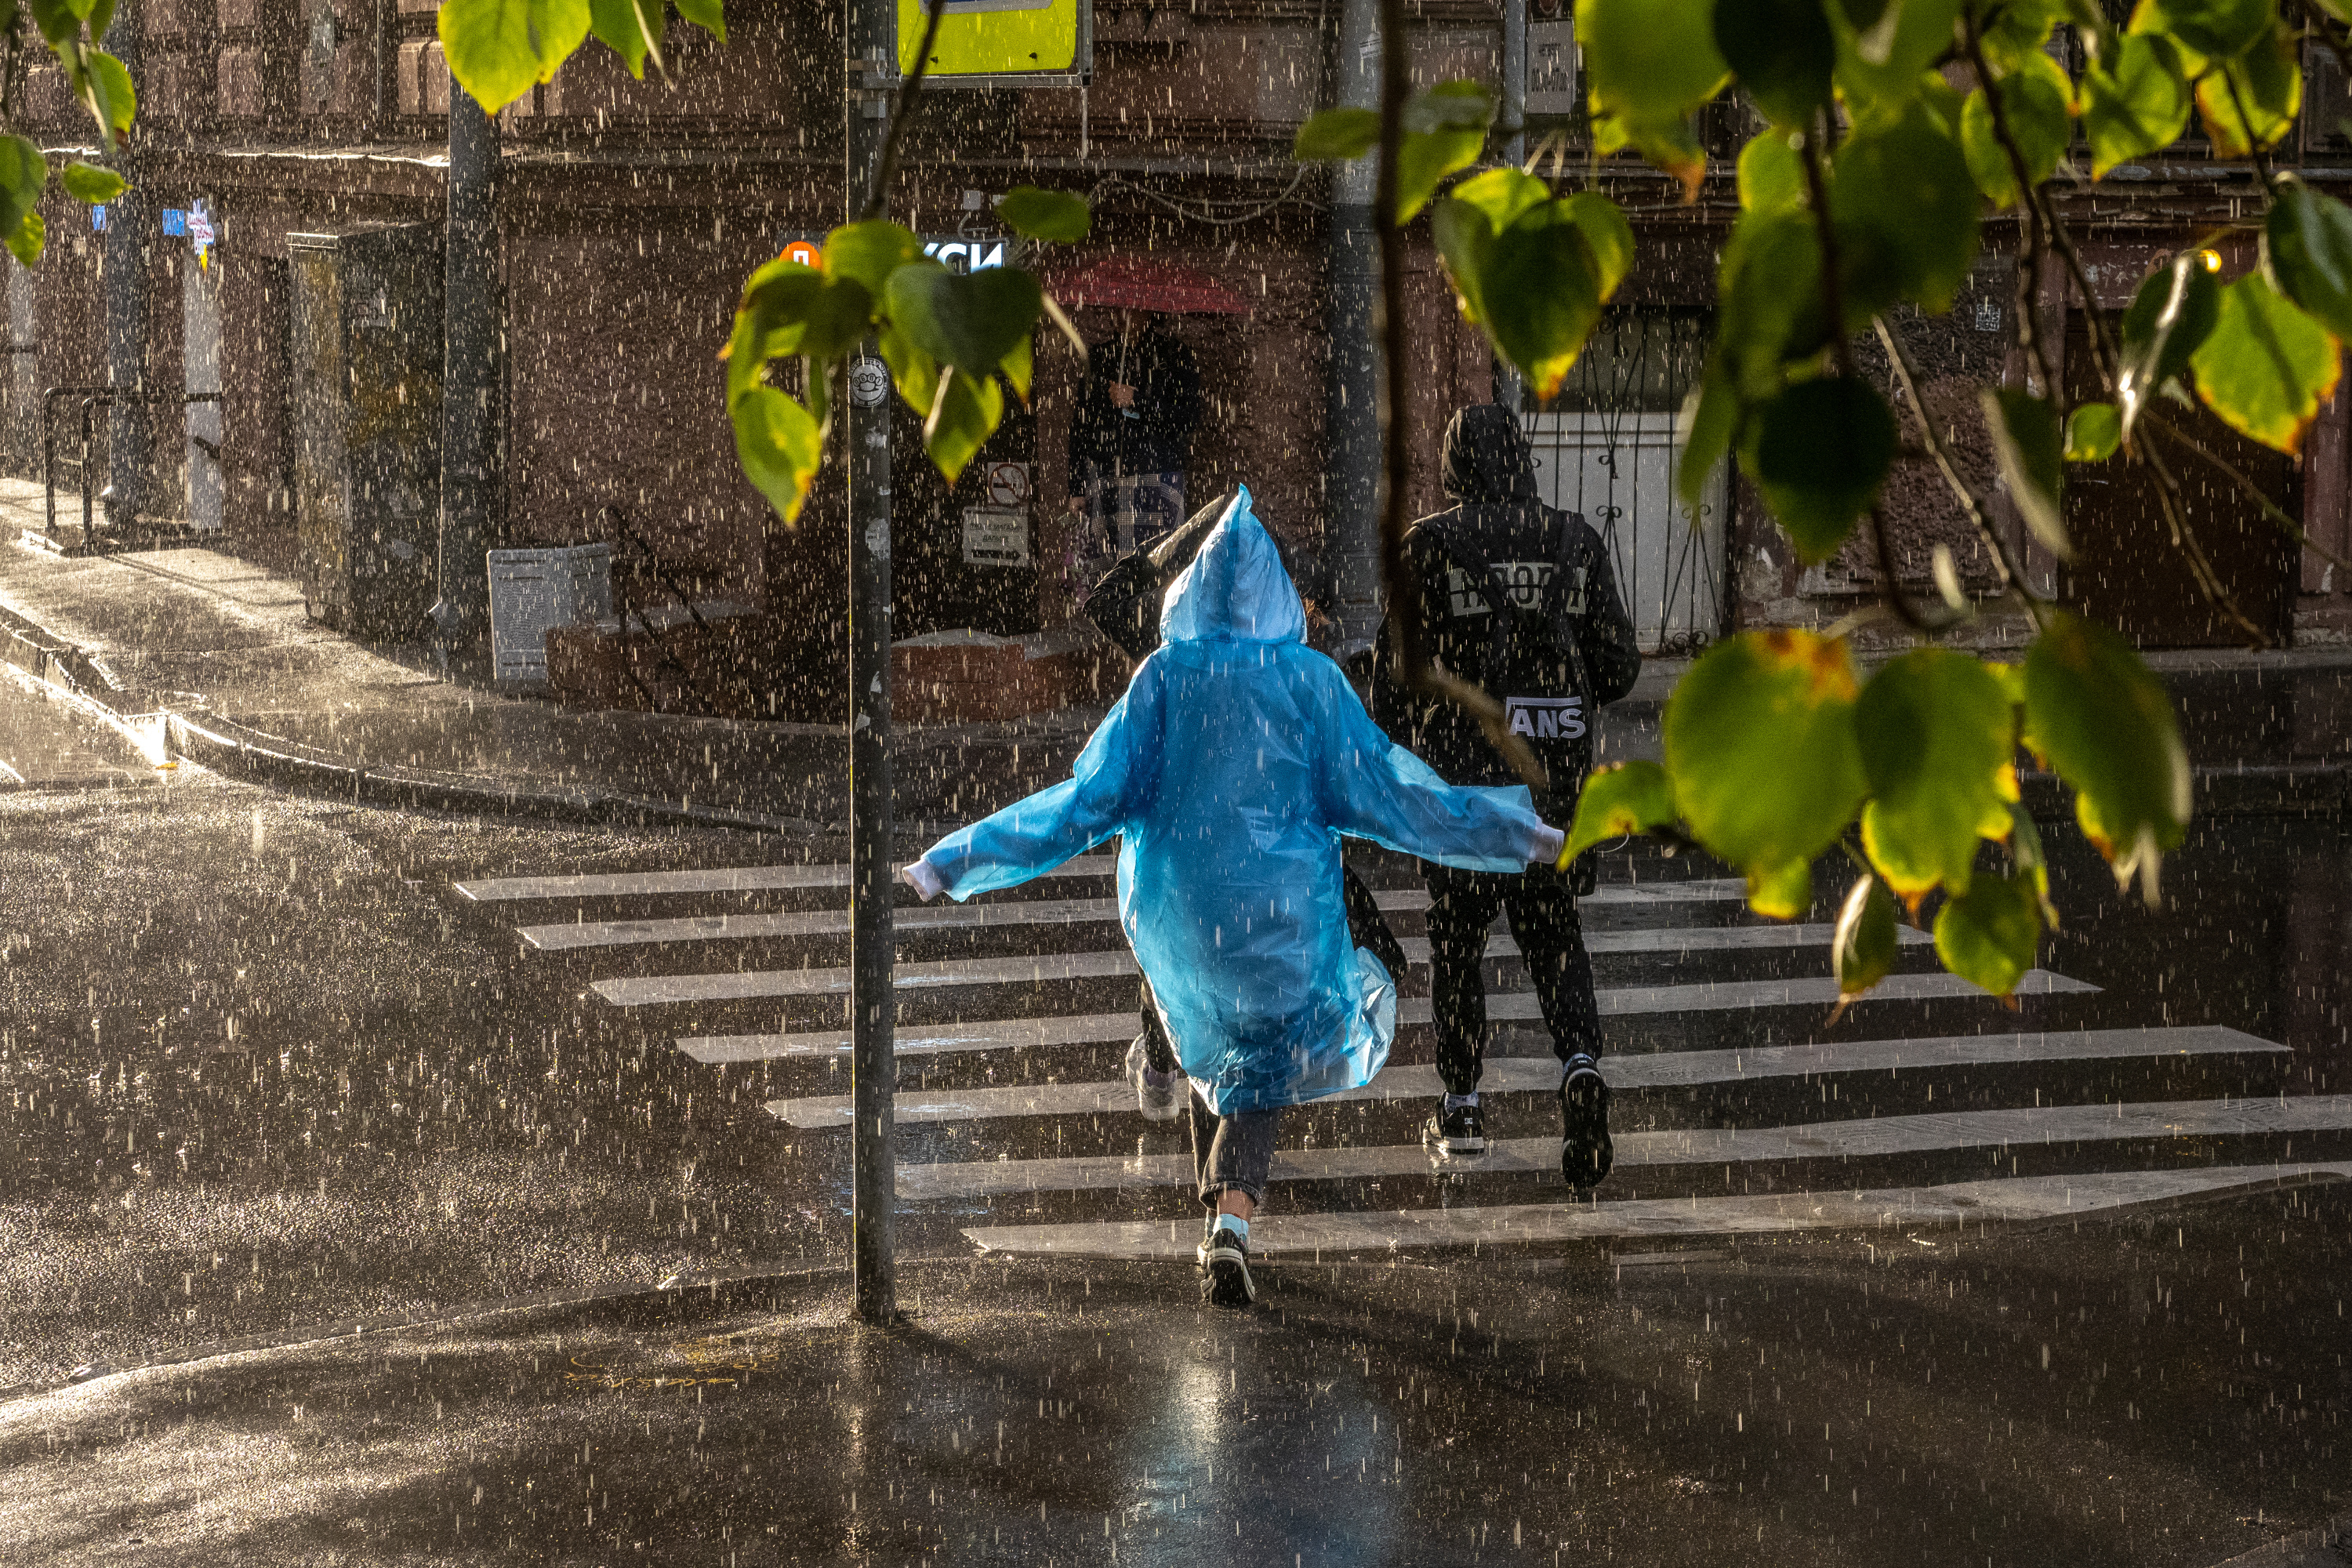 Питерский дождь. Какие бывают дожди. Какого цвета дождь. Питерский дождь фото.